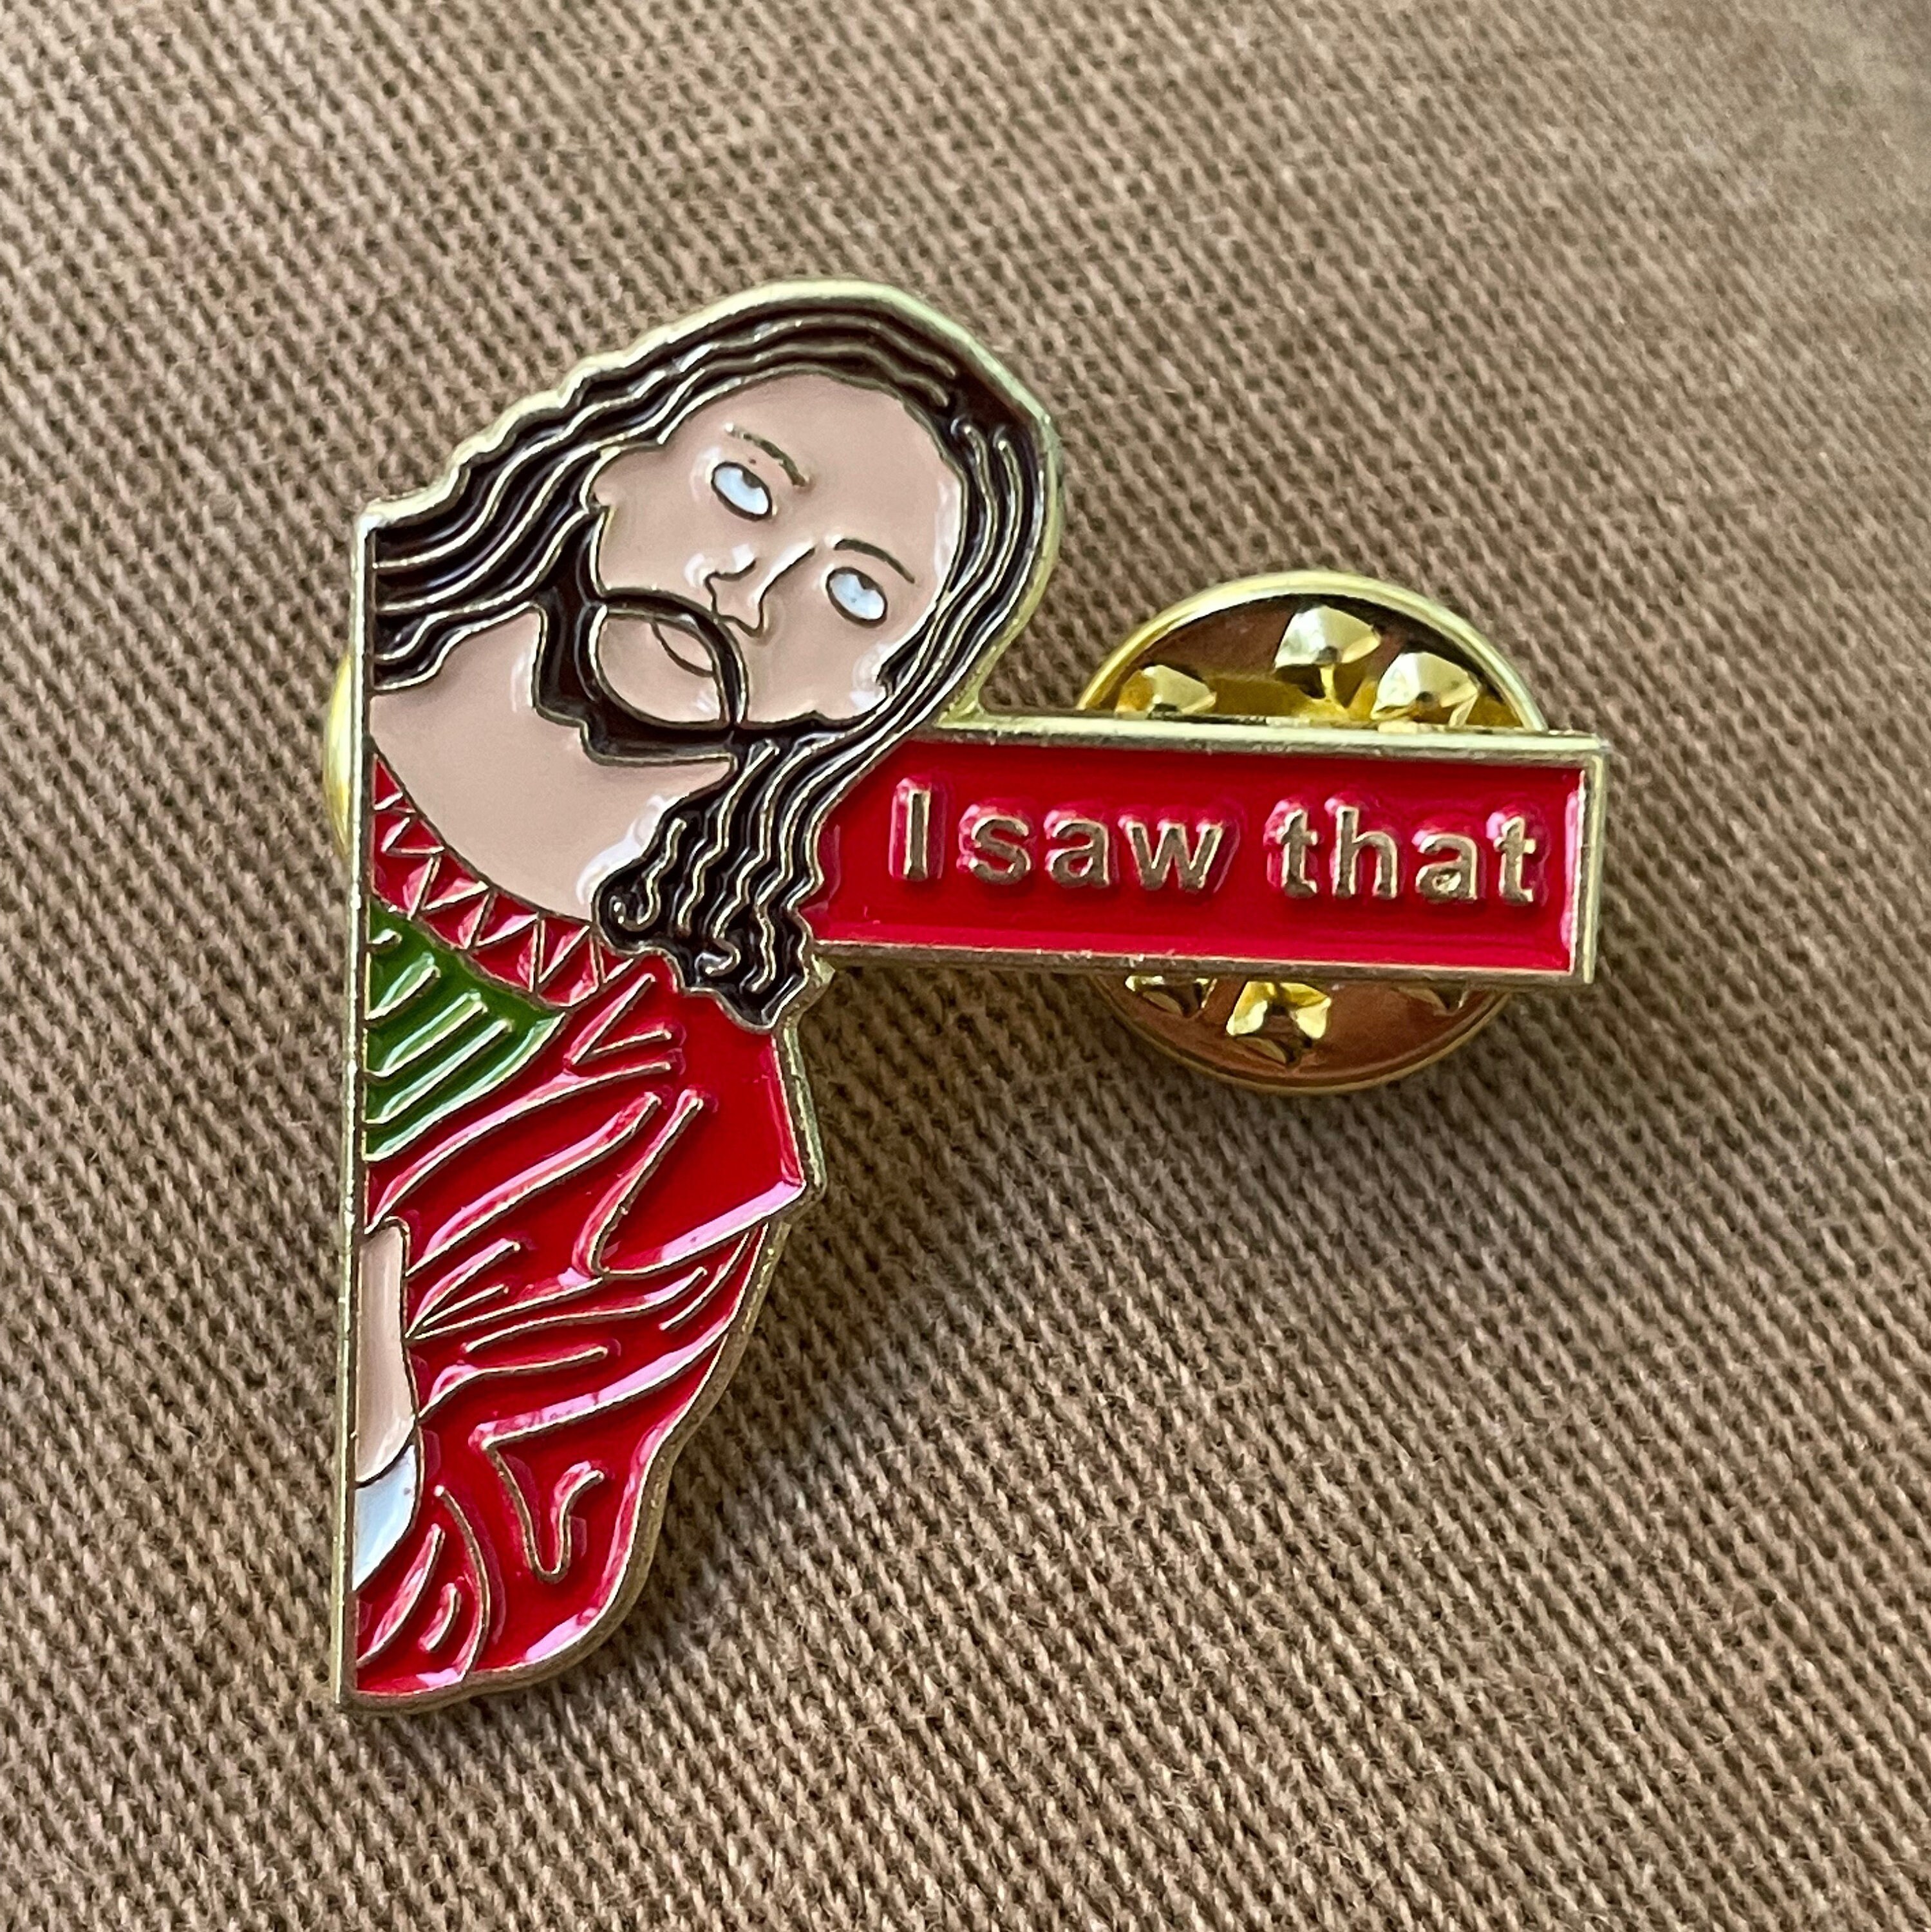 Pin on Jesus things